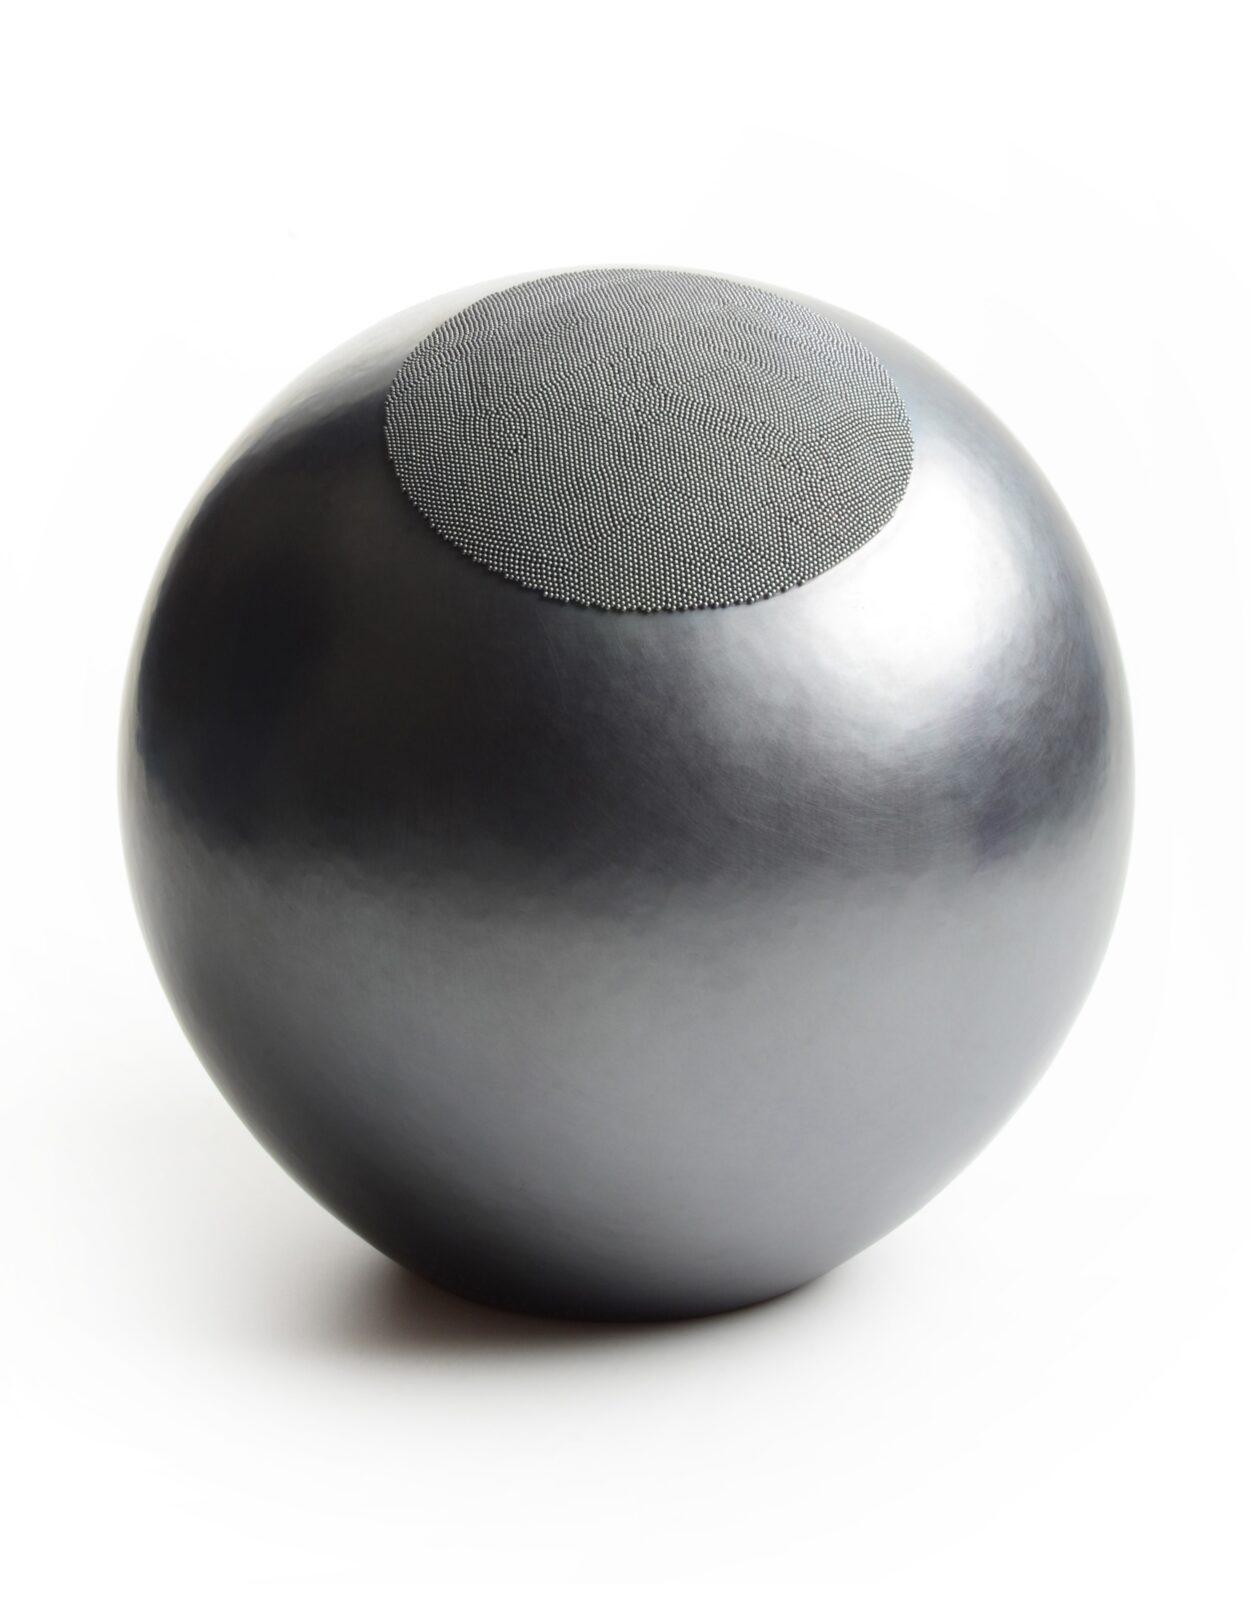 David Huycke, Dark Moon, zilver 925, zilver 1000, 2019, 28cmx28 cm